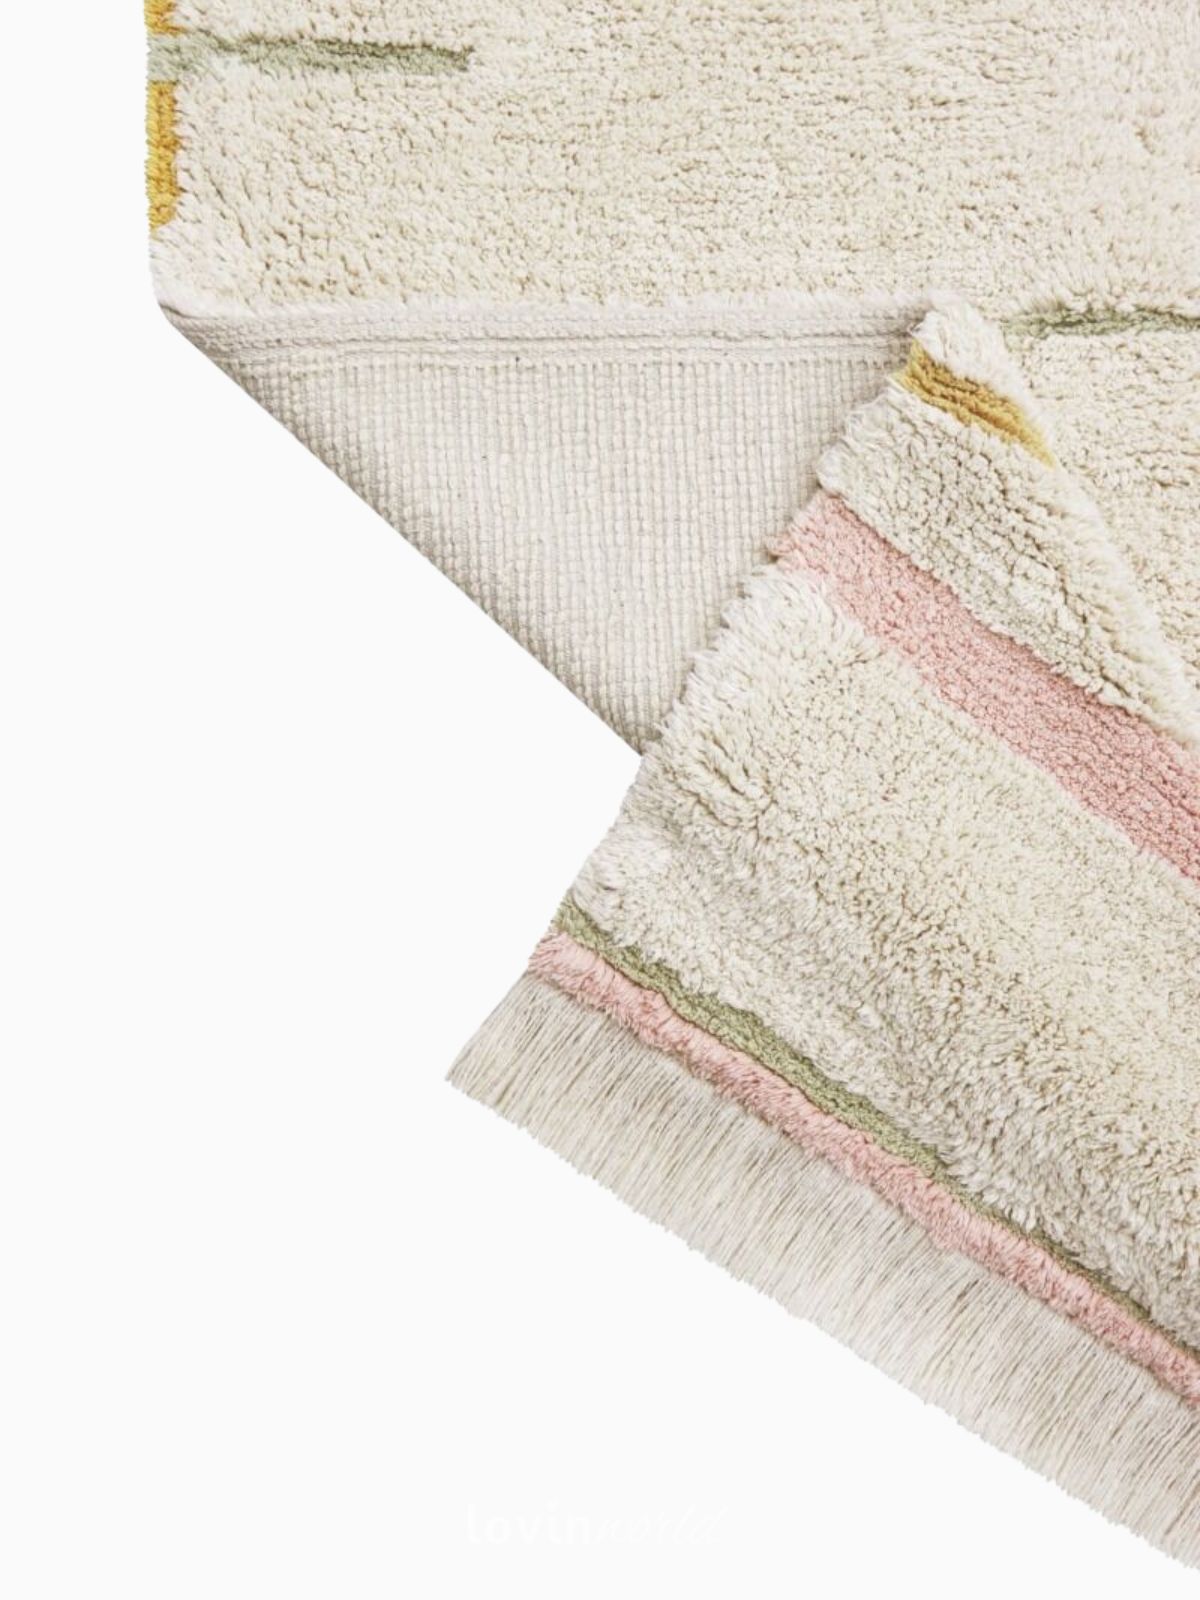 Tappeto lavabile Lanes in cotone naturale, colore rosa vintage-8